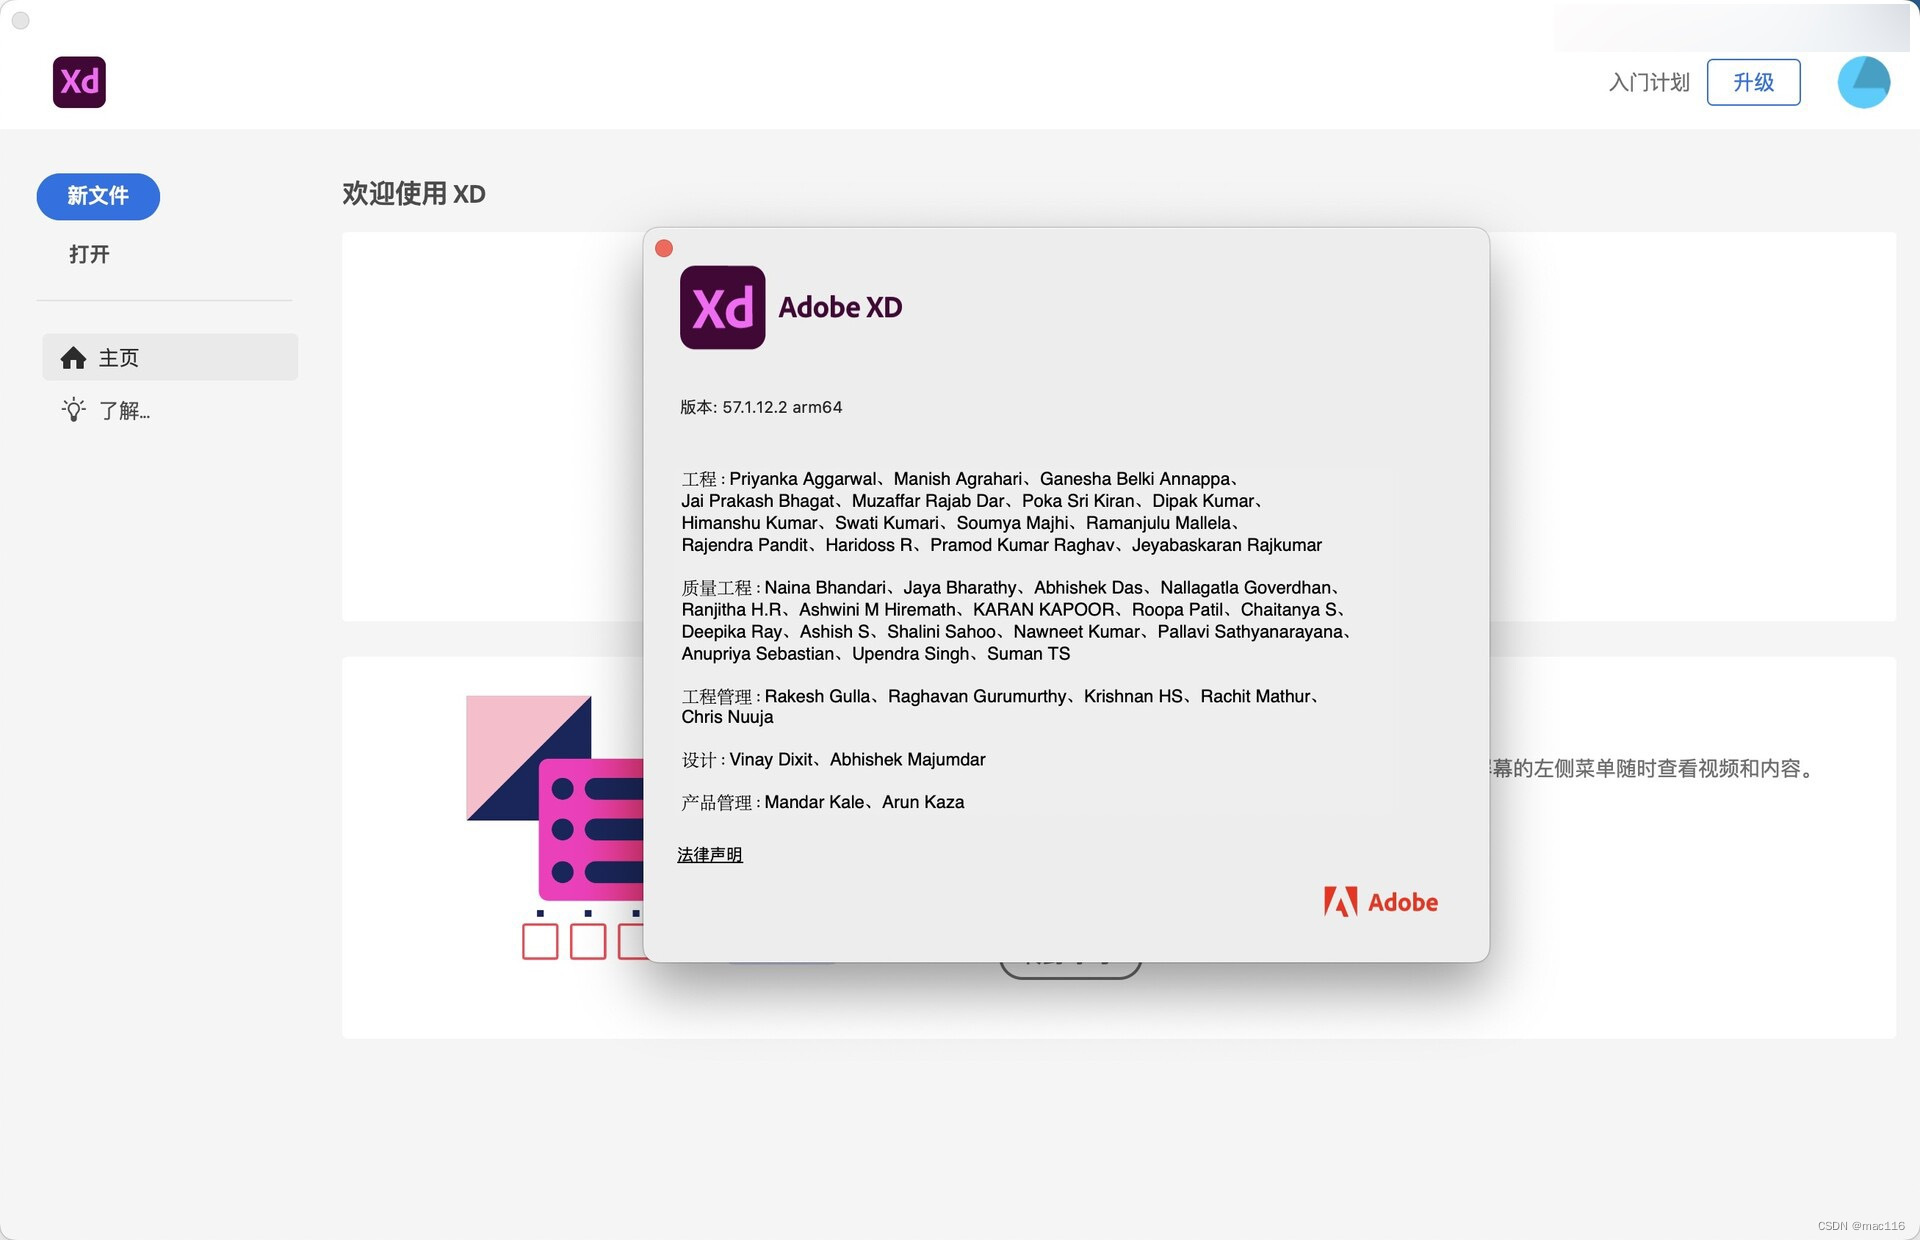 原型制作的软件 Experience Design mac( XD ) 中文版软件特色